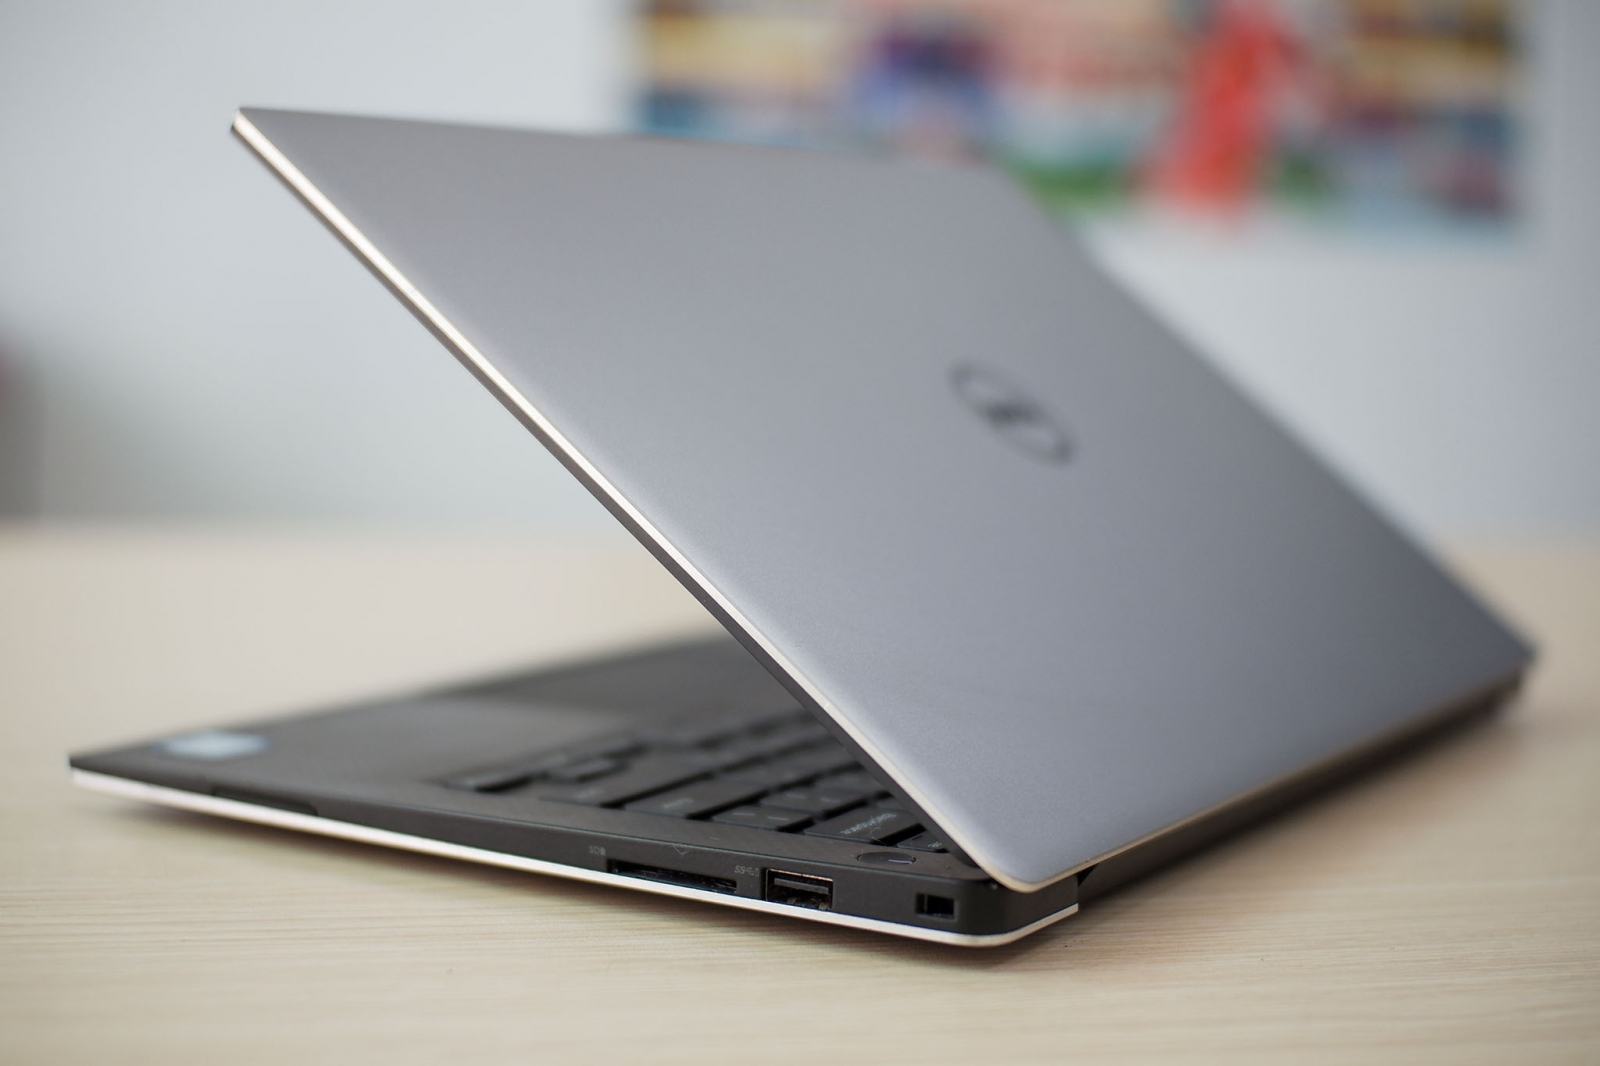 Hình ảnh laptop dell xps 13 9360 với thiết kế nhỏ gọn, mỏng nhẹ và sang trọng